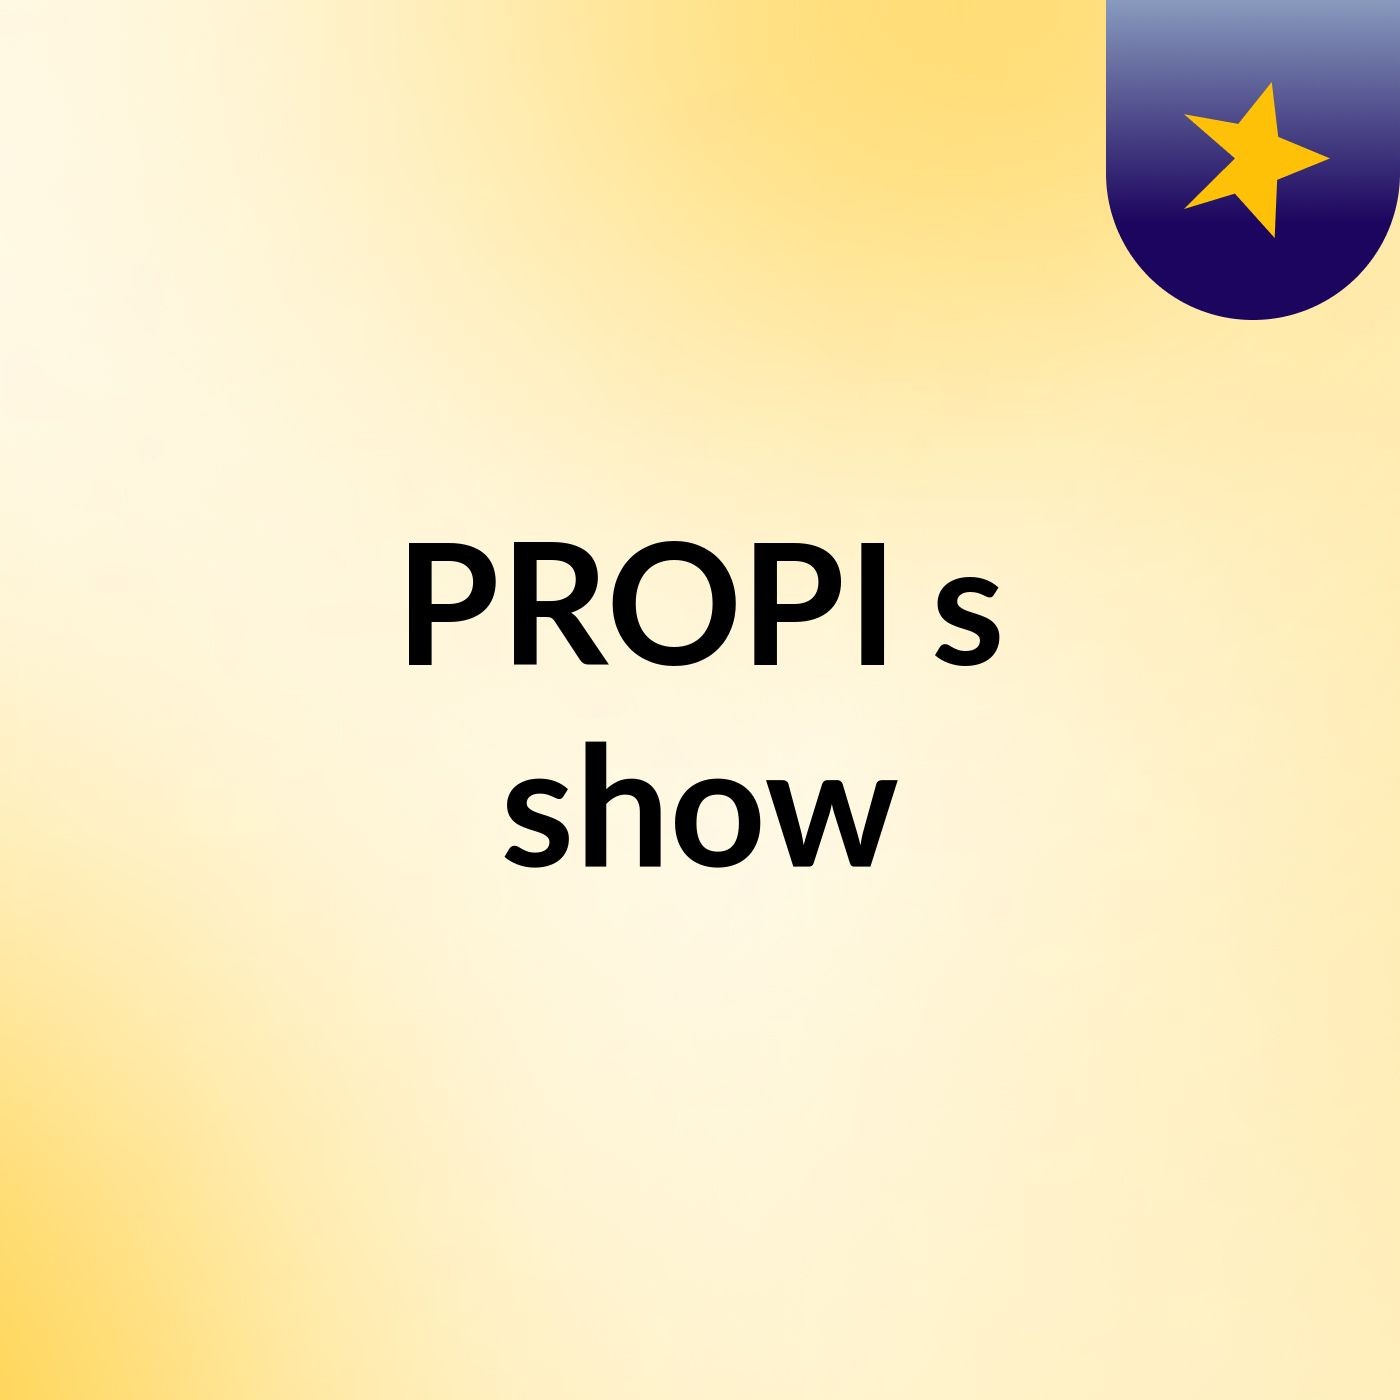 PROPI's show